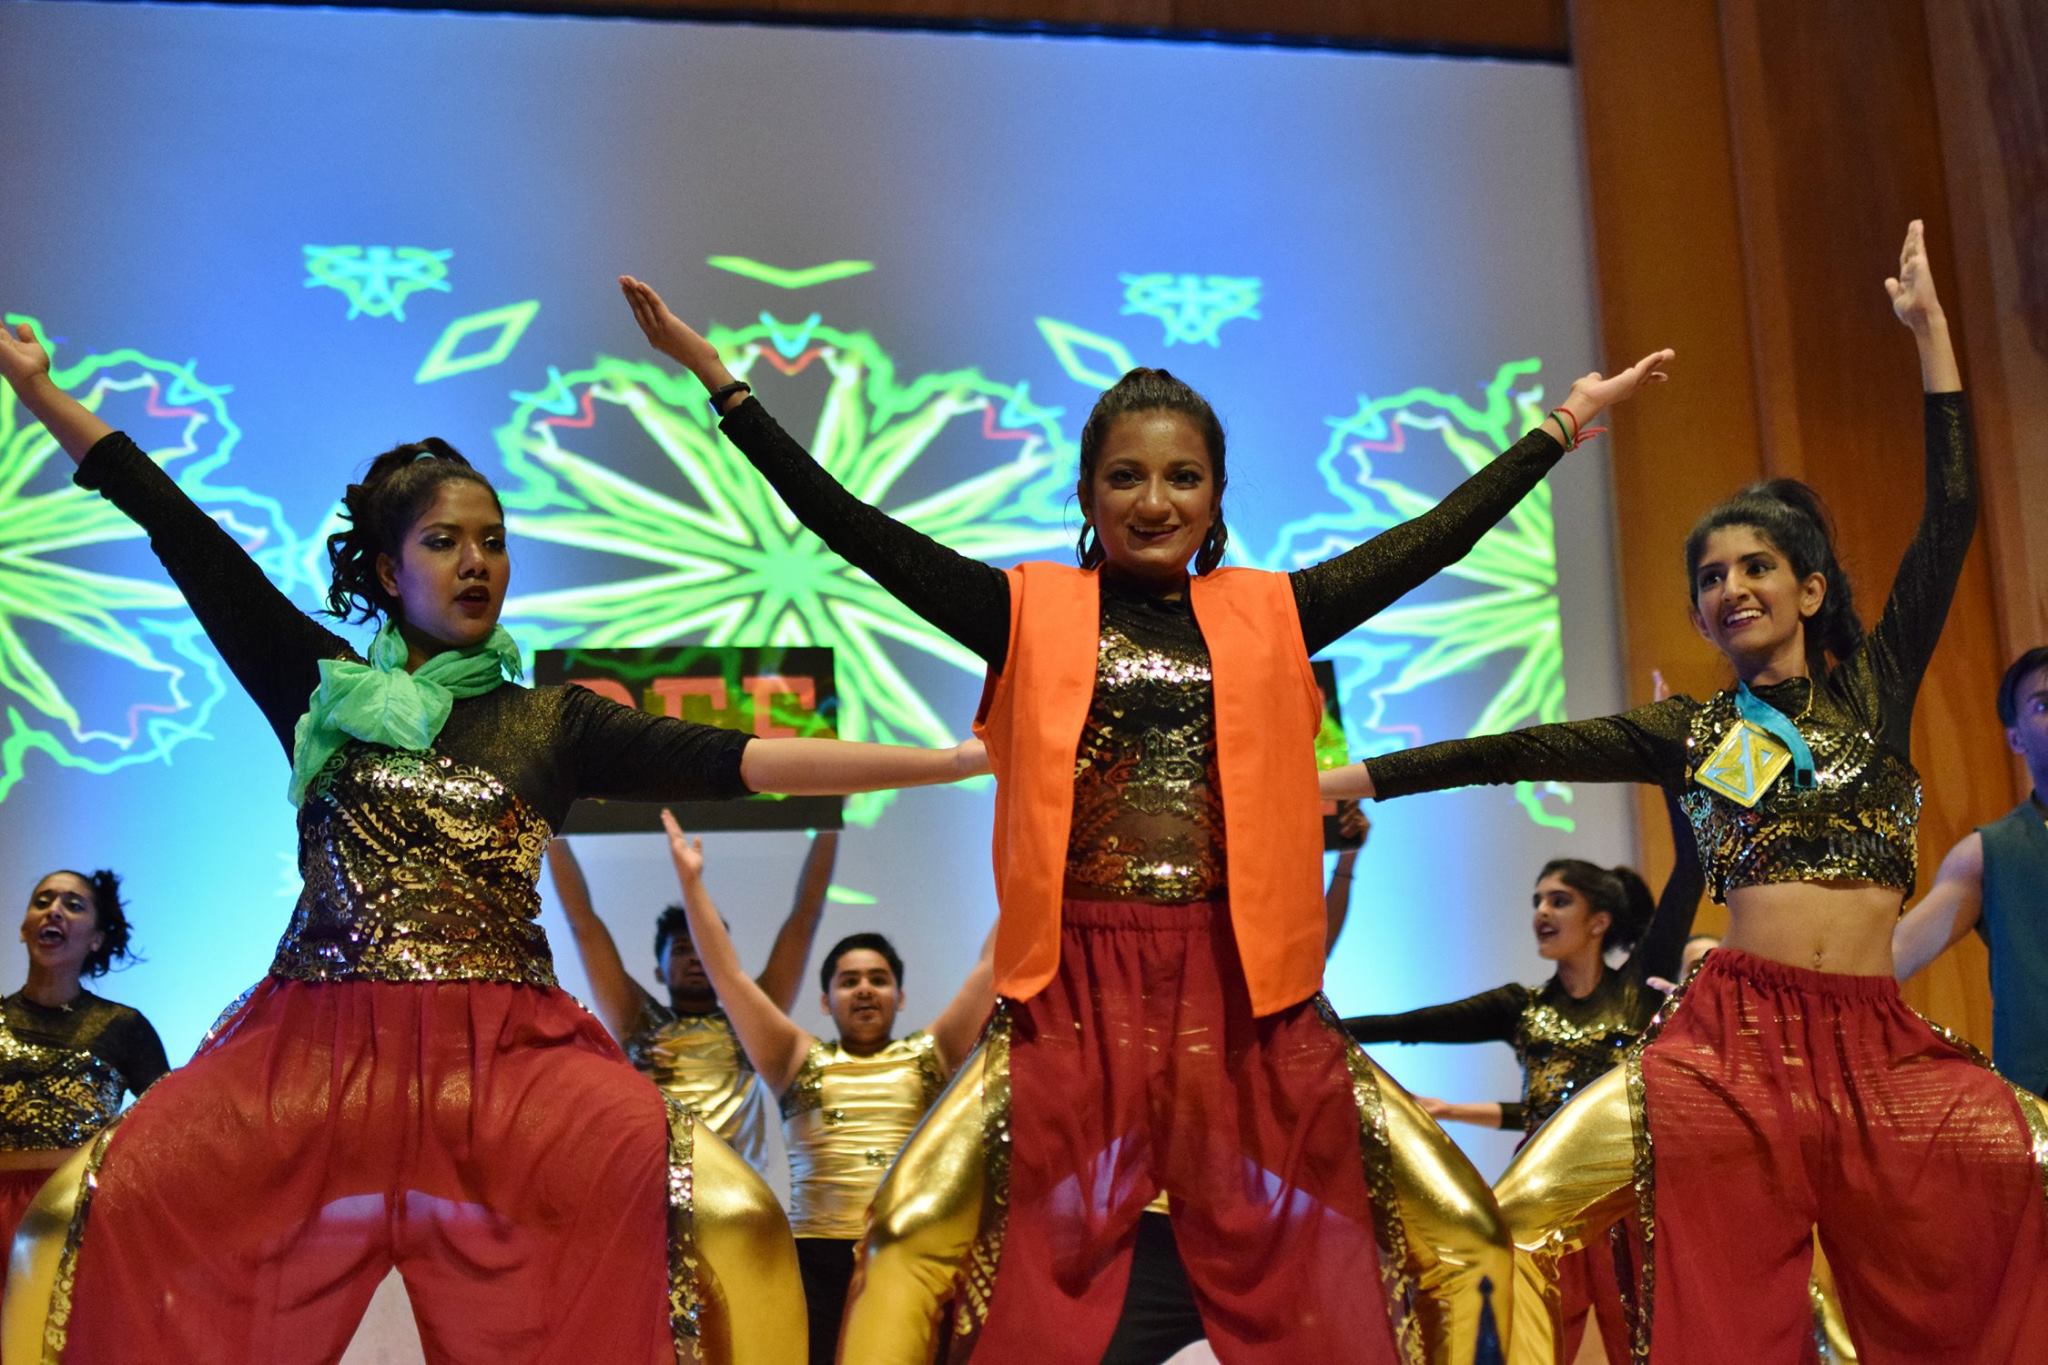 Dancers perform during a Diwali celebration.